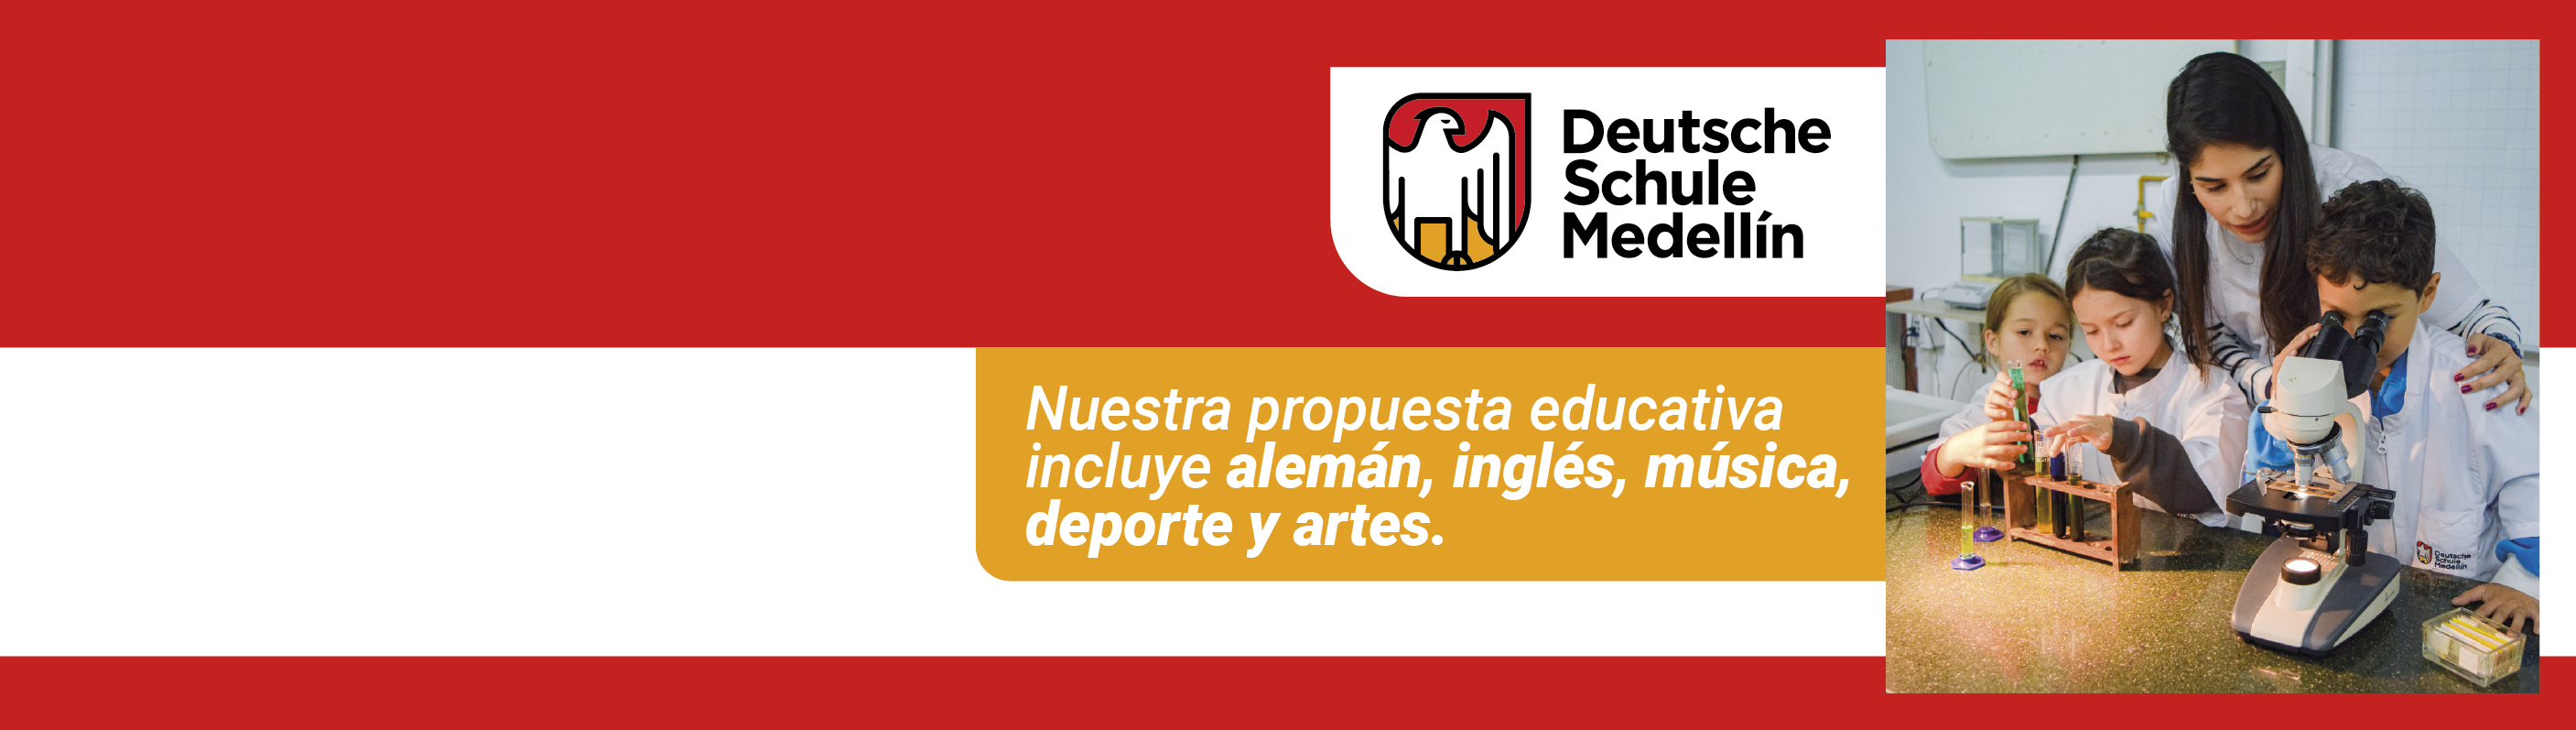 Entdecken Sie die Deutsche Schule Medellín!